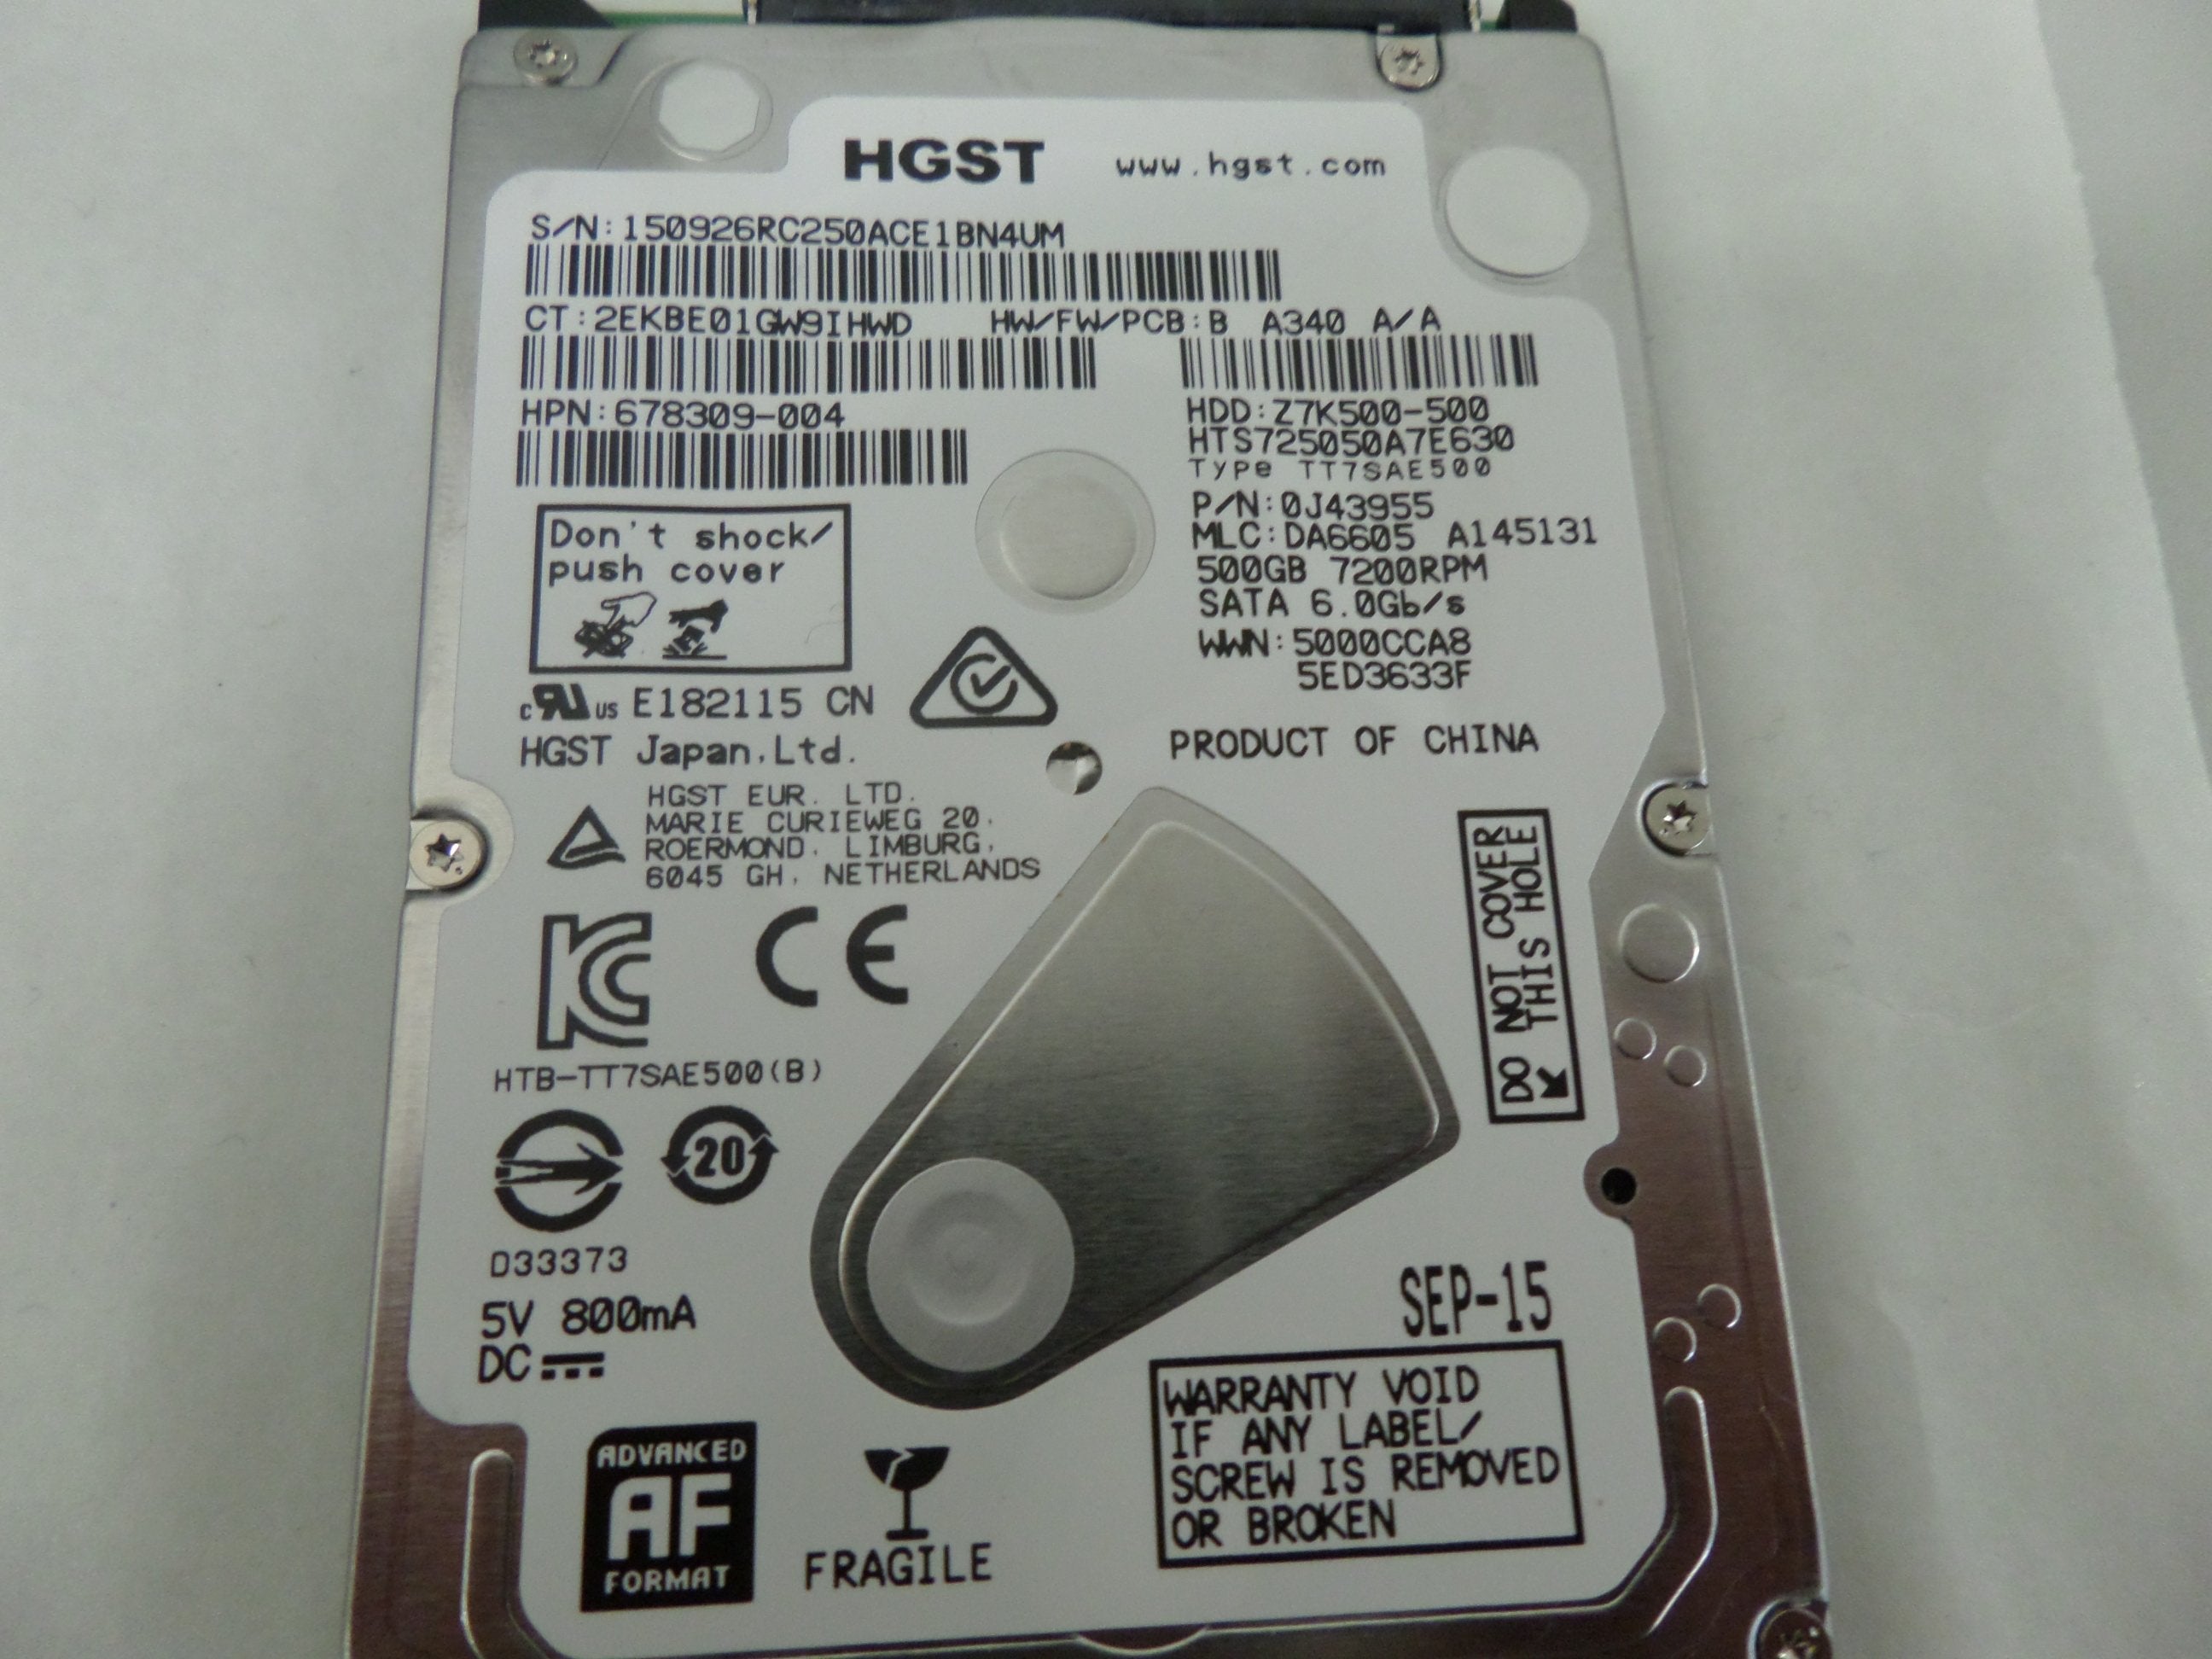 0J43985 - HP HGST Travelstar 500GB SATA 7200RPM 2.5in HDD - Refurbished